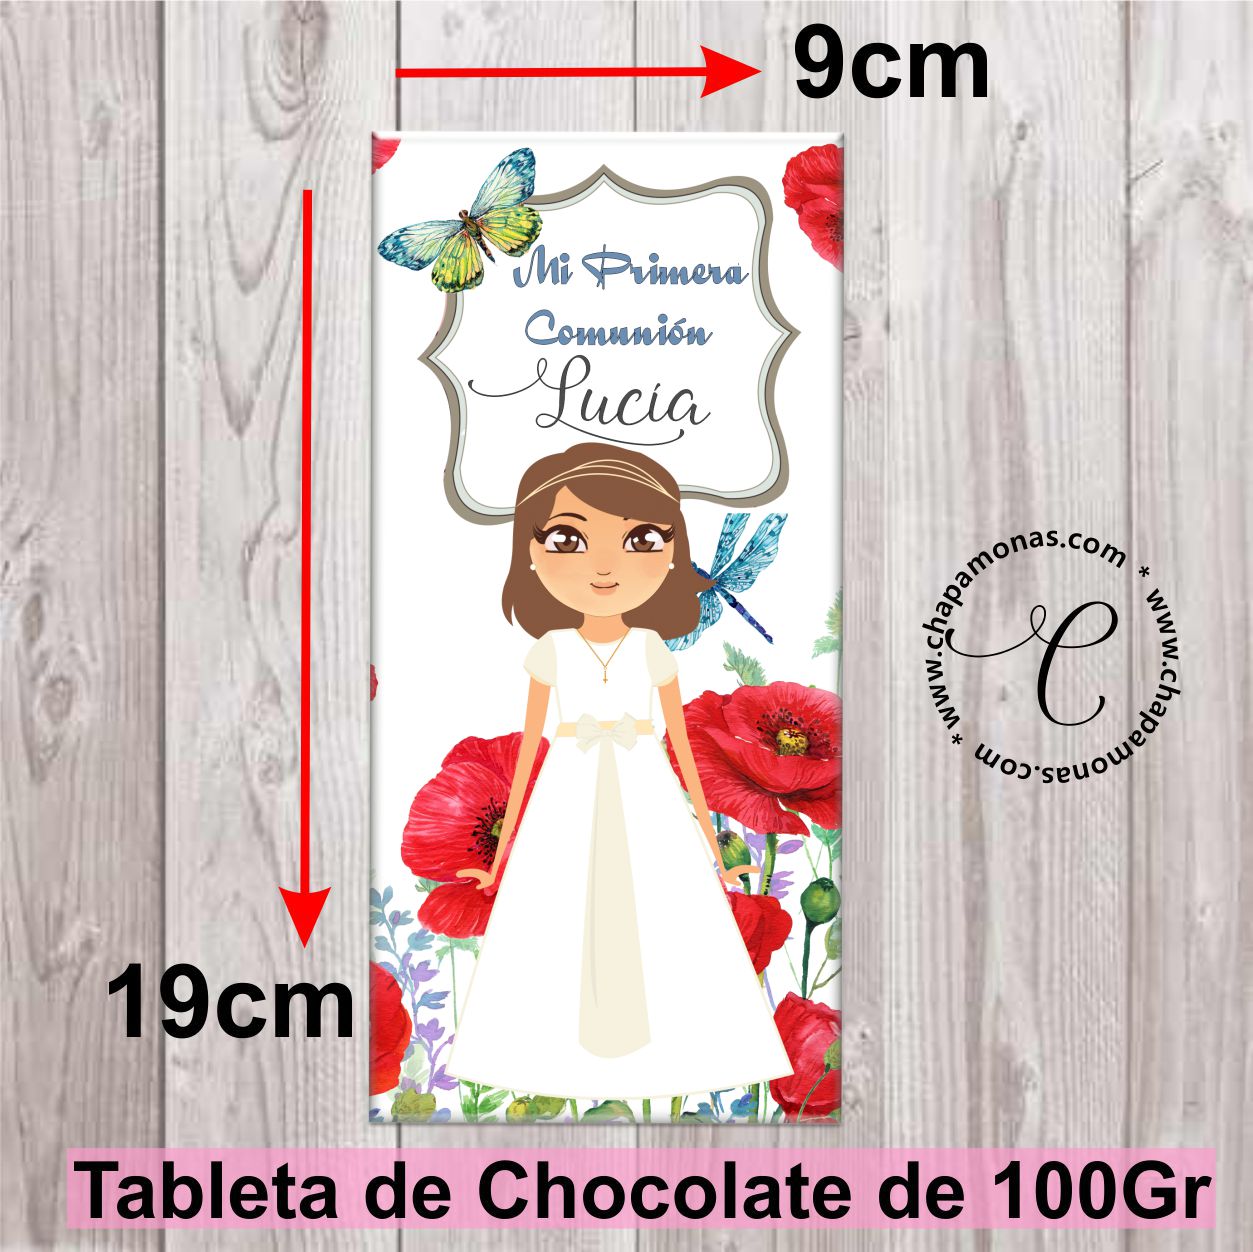 TABLETA DE CHOCOLATE PARA COMUNIÓN